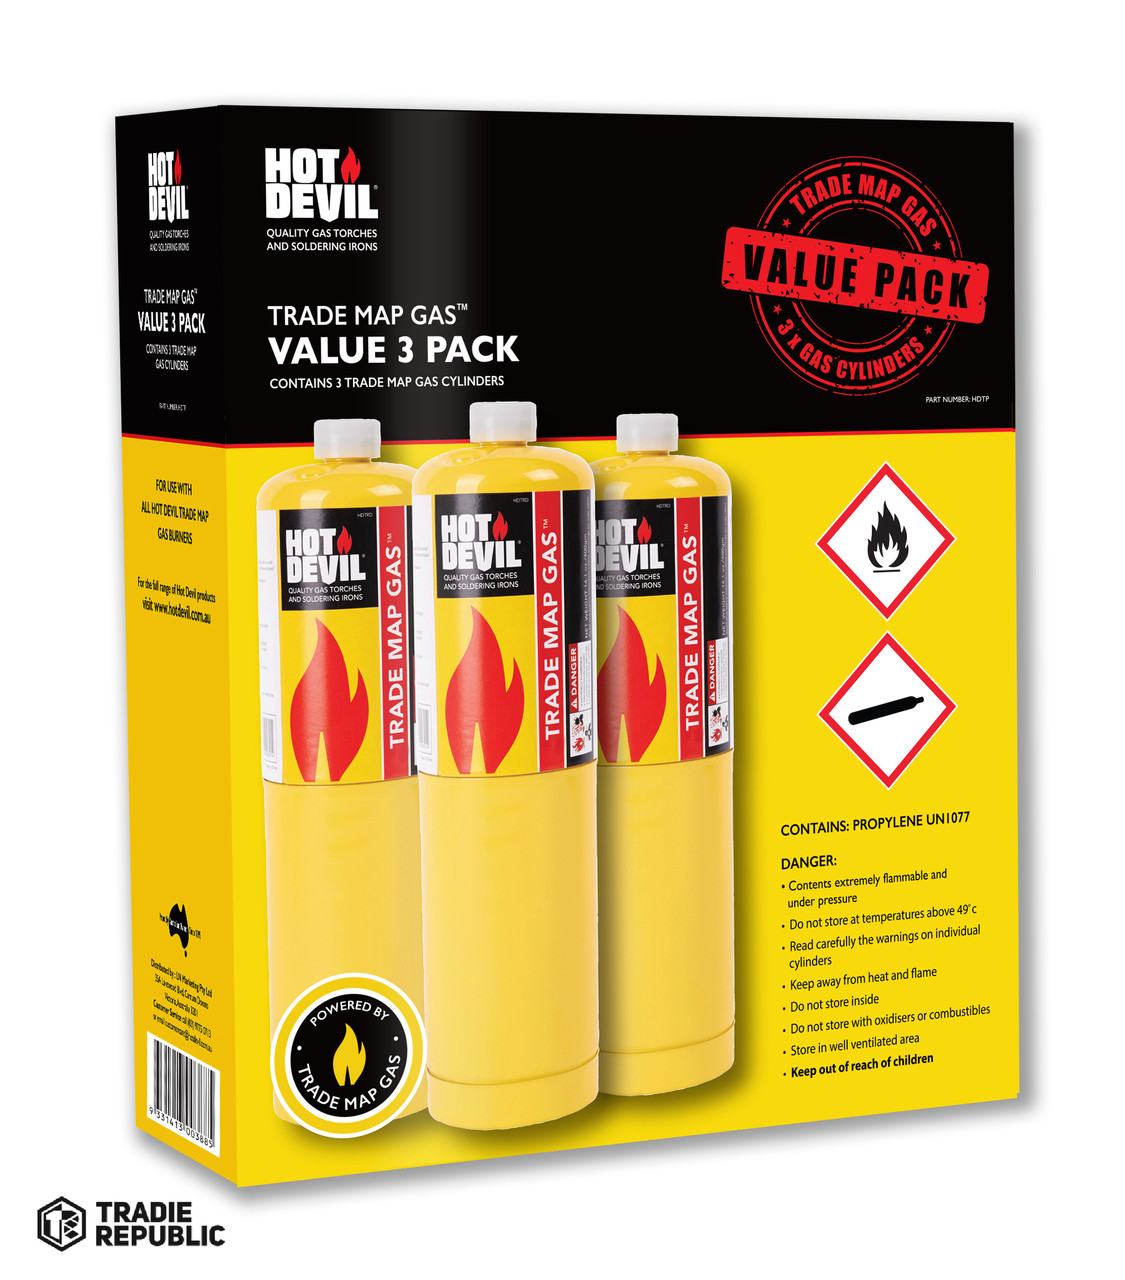 HDTP Hot Devil Trade Map Gas Value 3 Pack